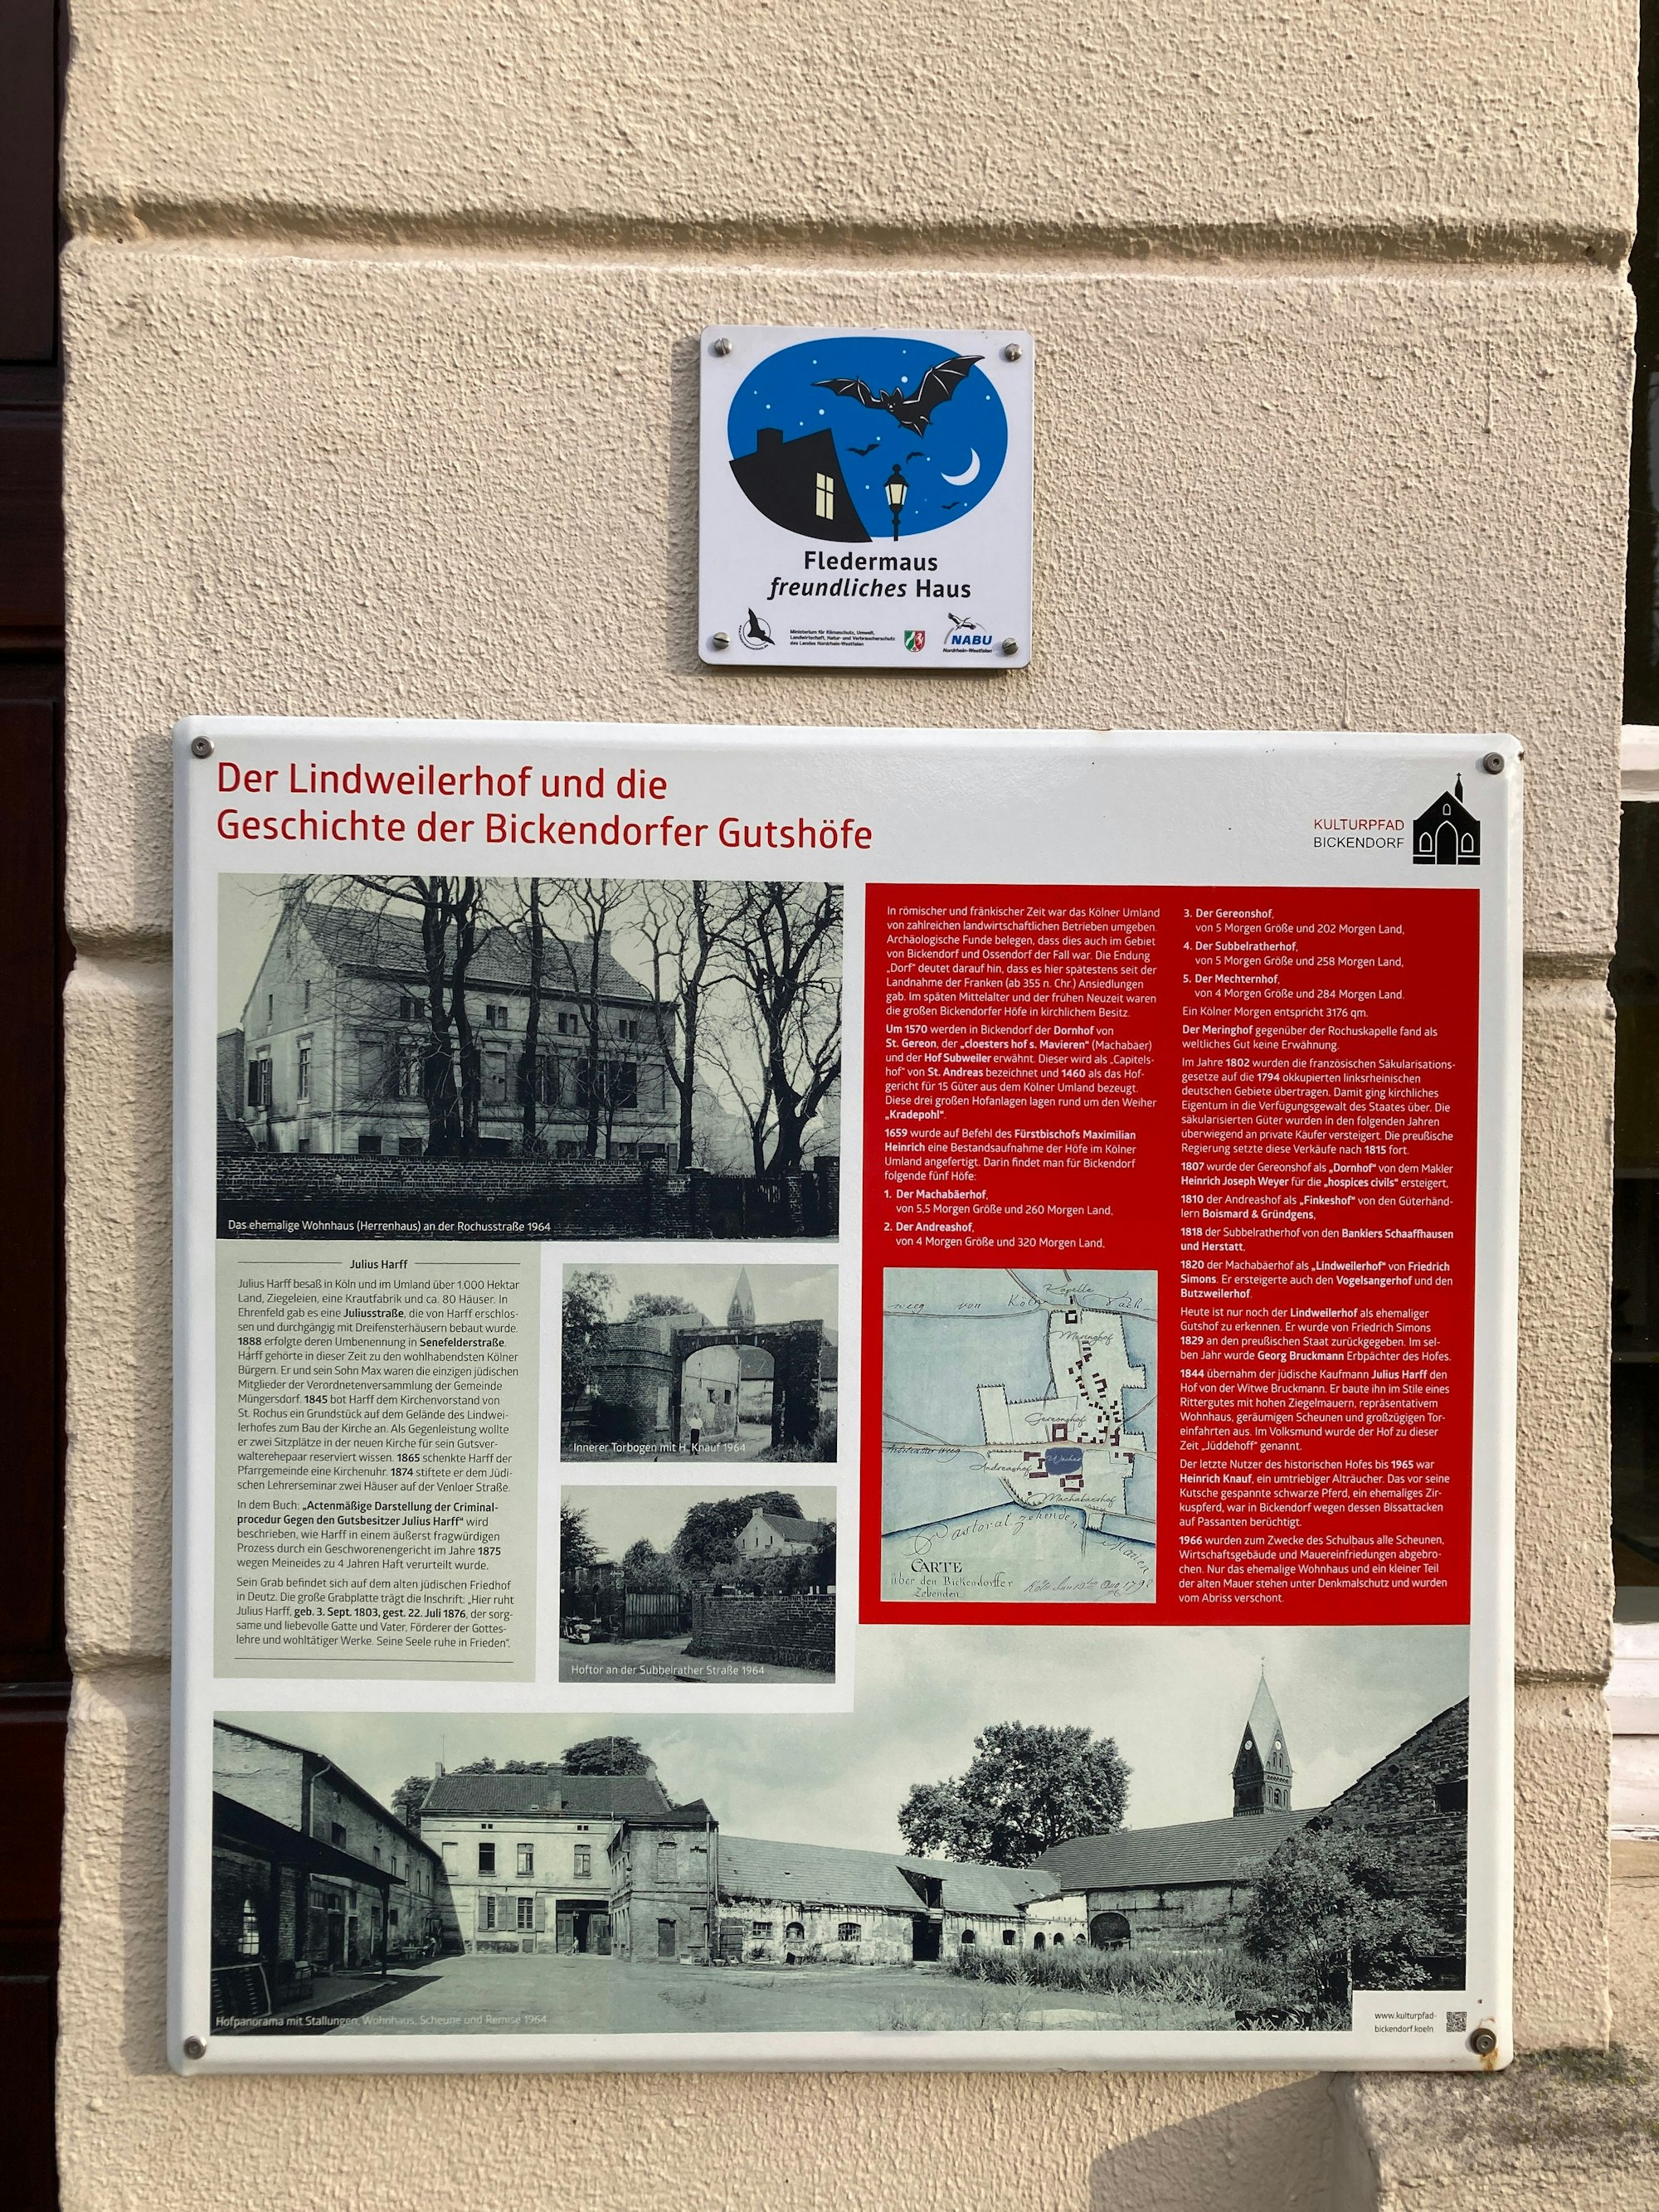 Eine Plakette an der Hauswand des Gutshauses informiert über die Geschichte des Hofs.